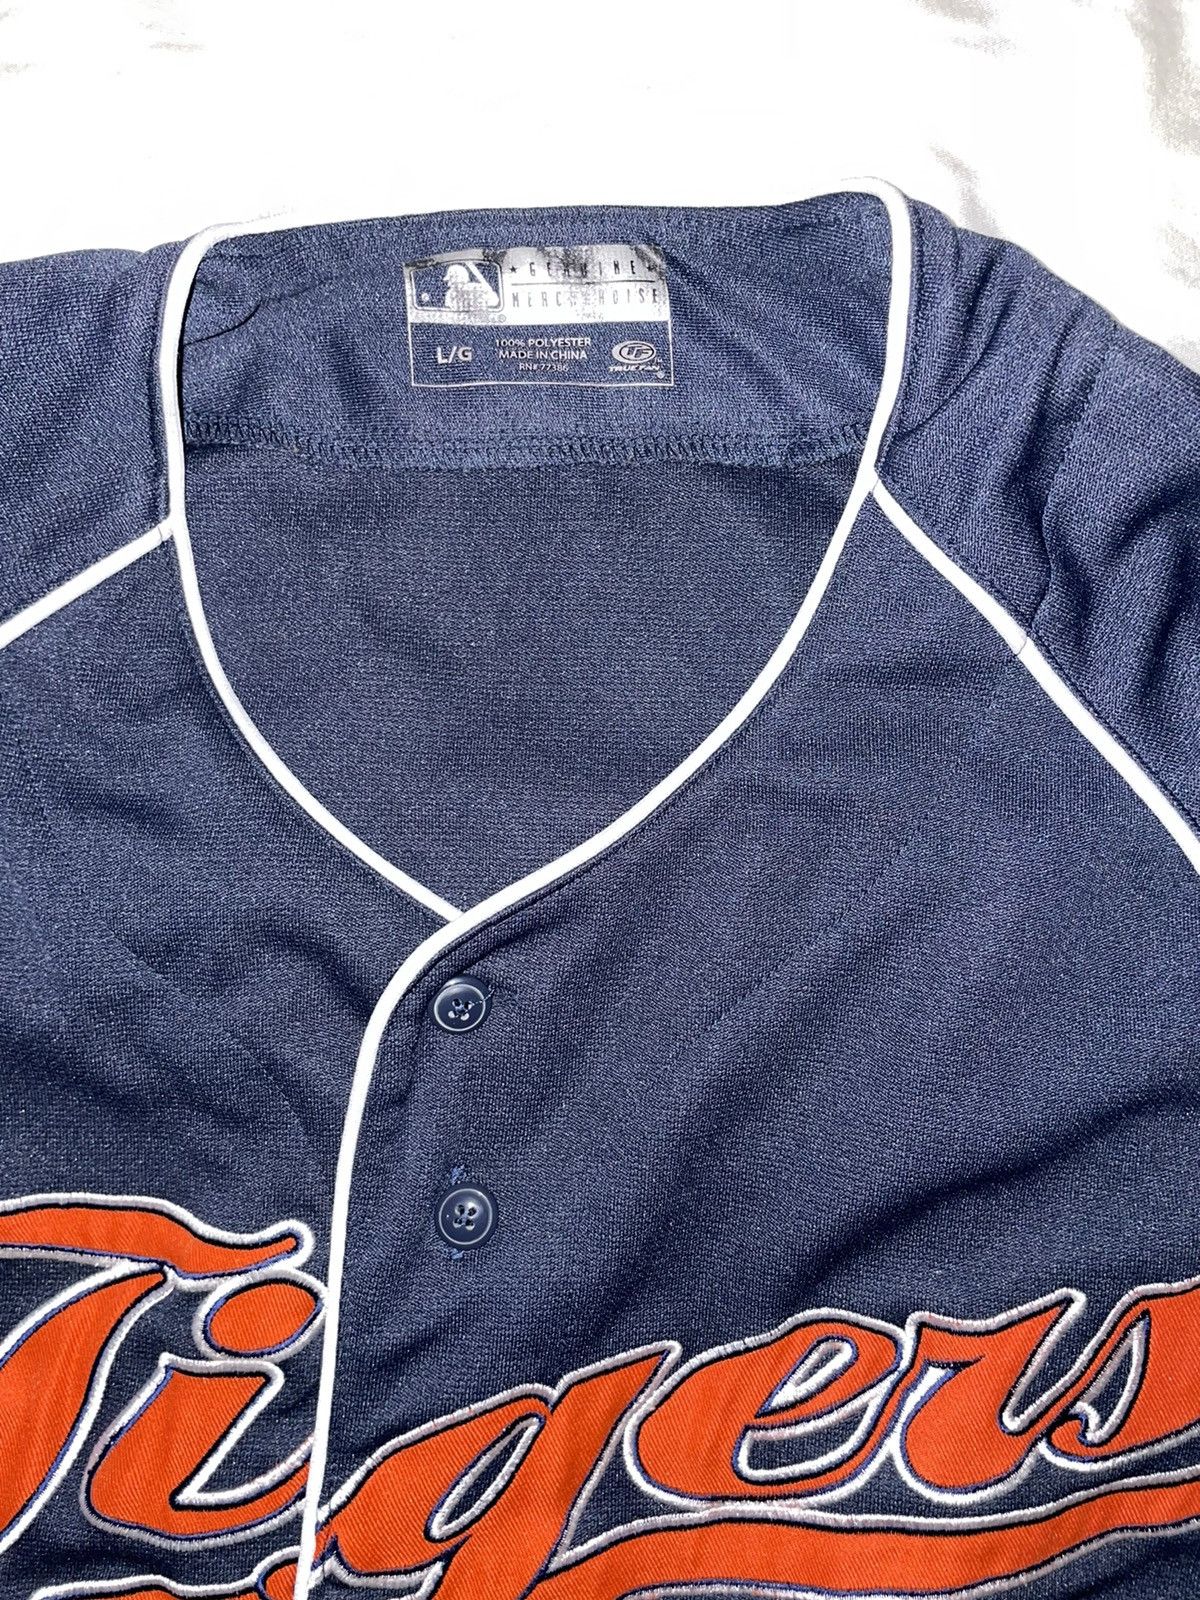 Genuine Merchandise By True Fan Vintage Detroit Tigers Jersey True Fan Size US L / EU 52-54 / 3 - 2 Preview